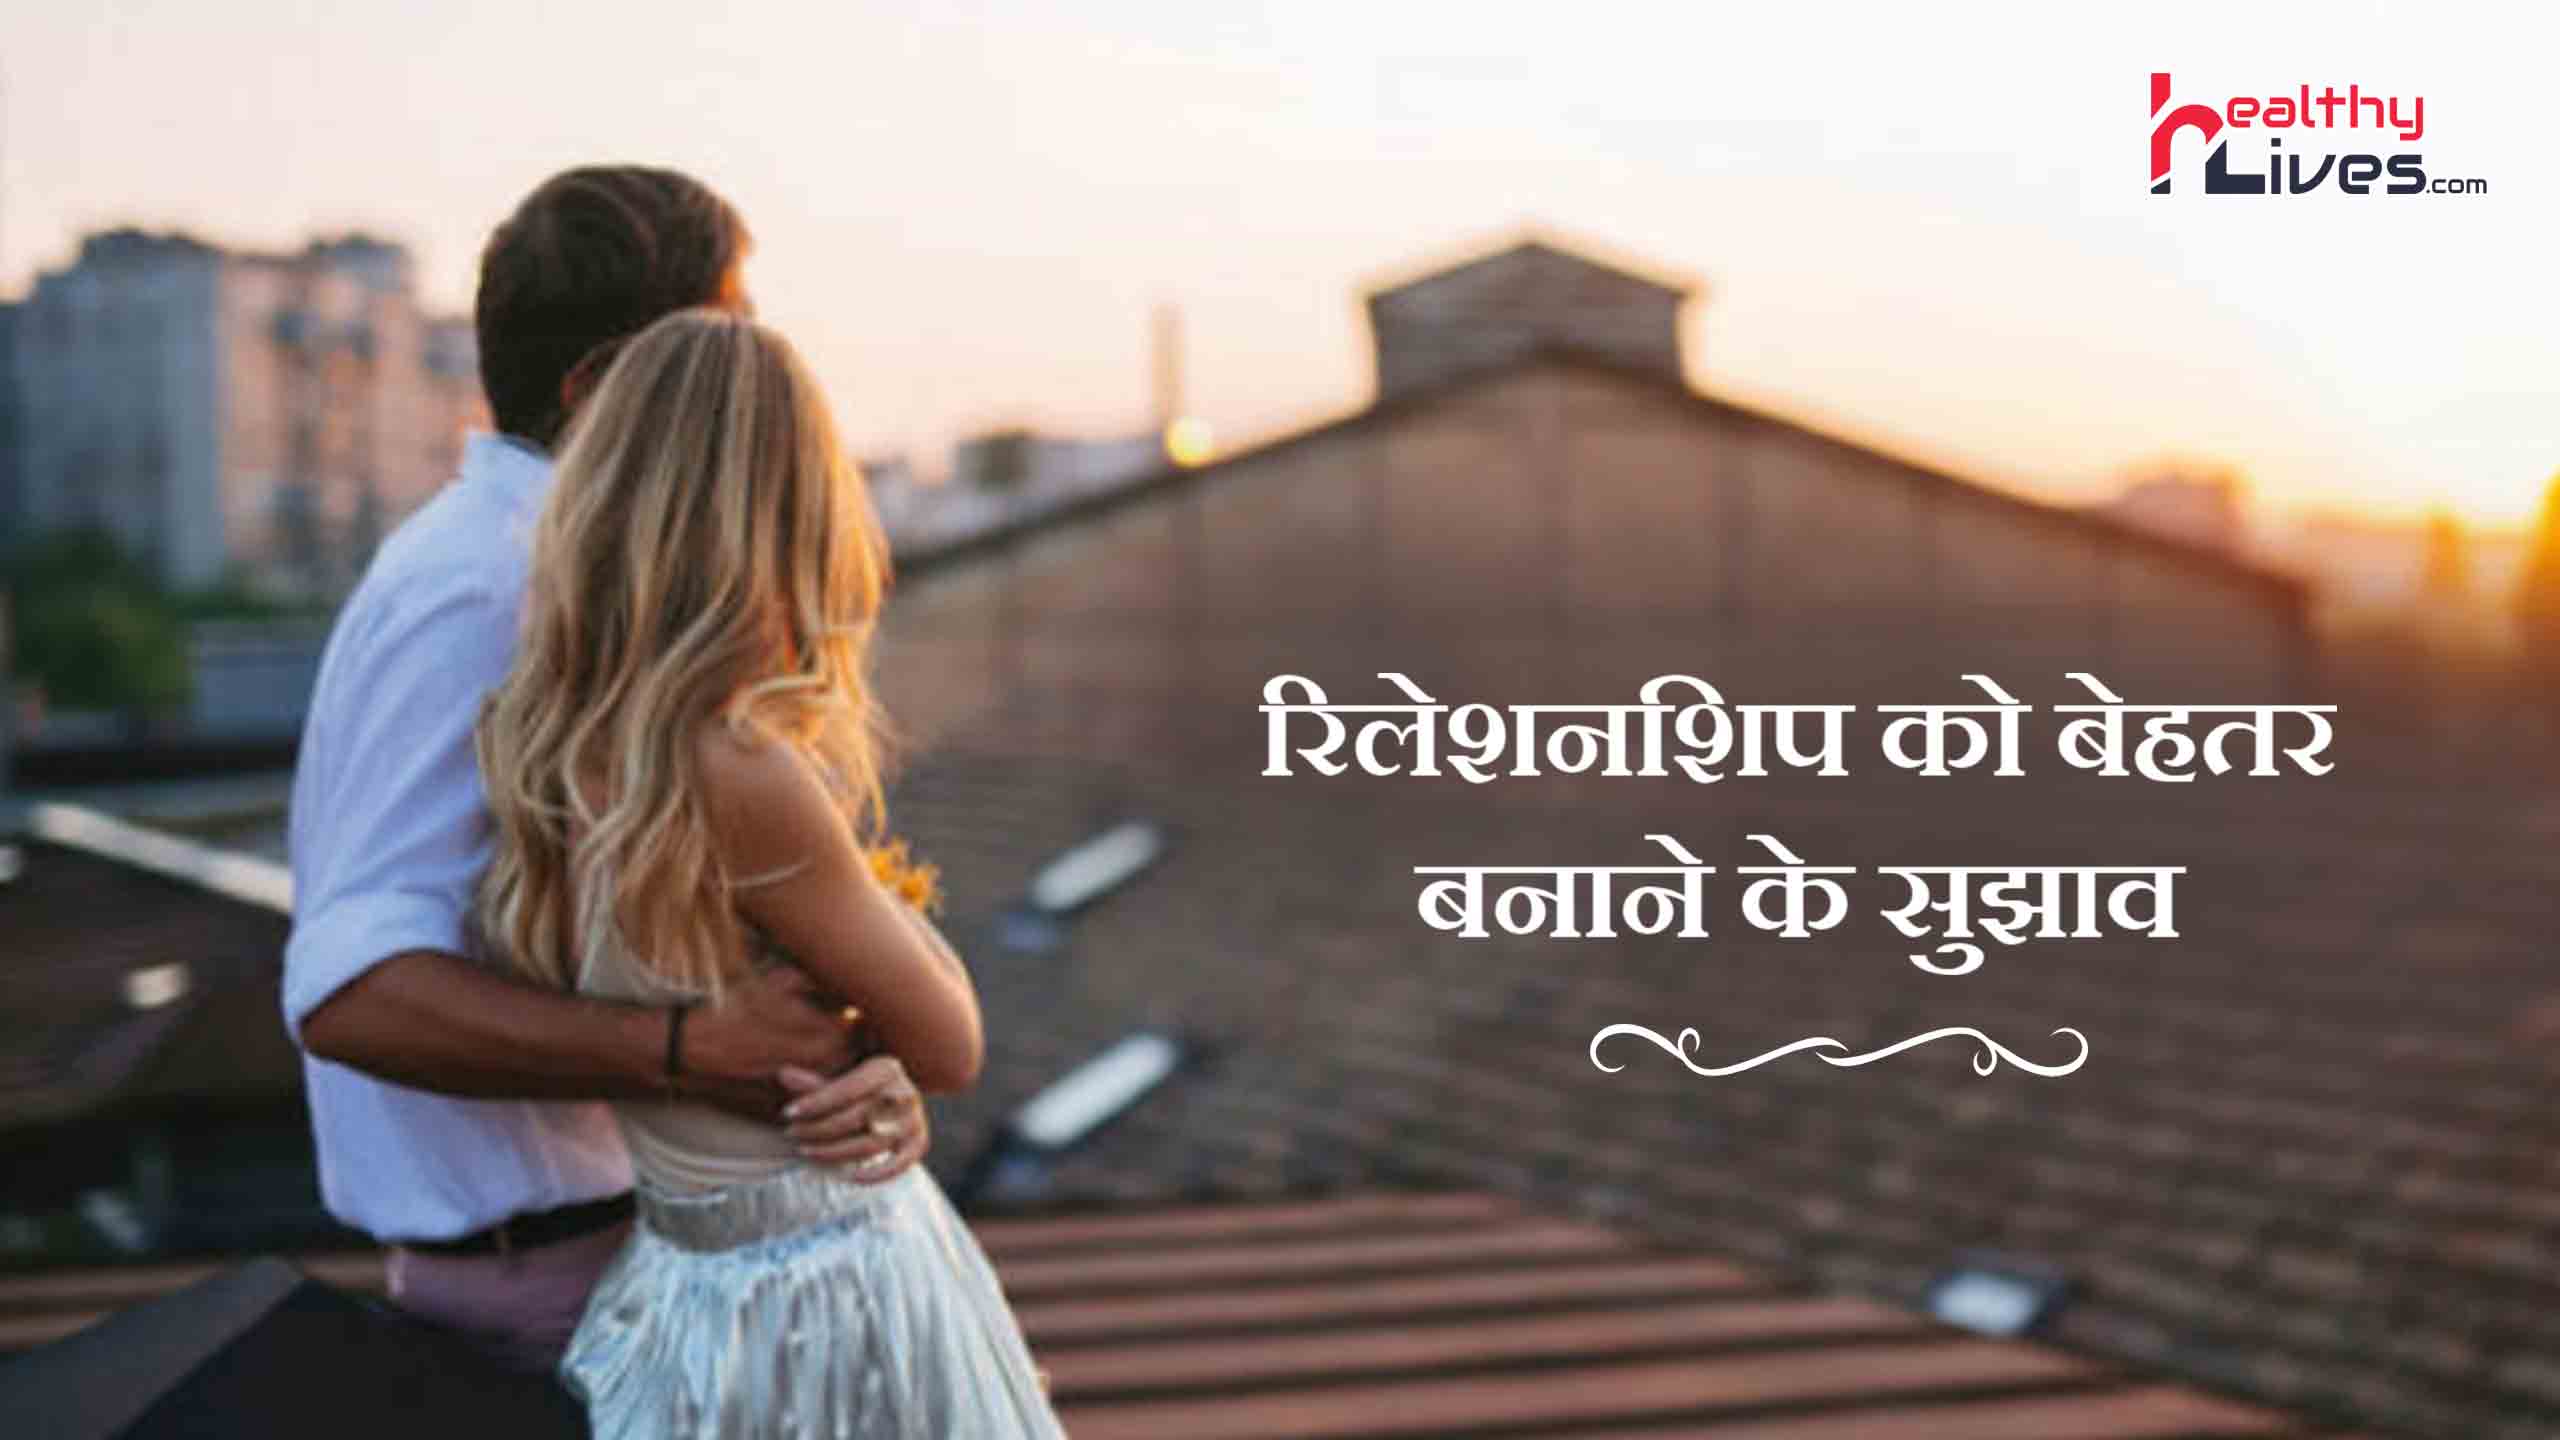 Relationship Tips in Hindi: अपने रिश्ते को दे एक नया रूप